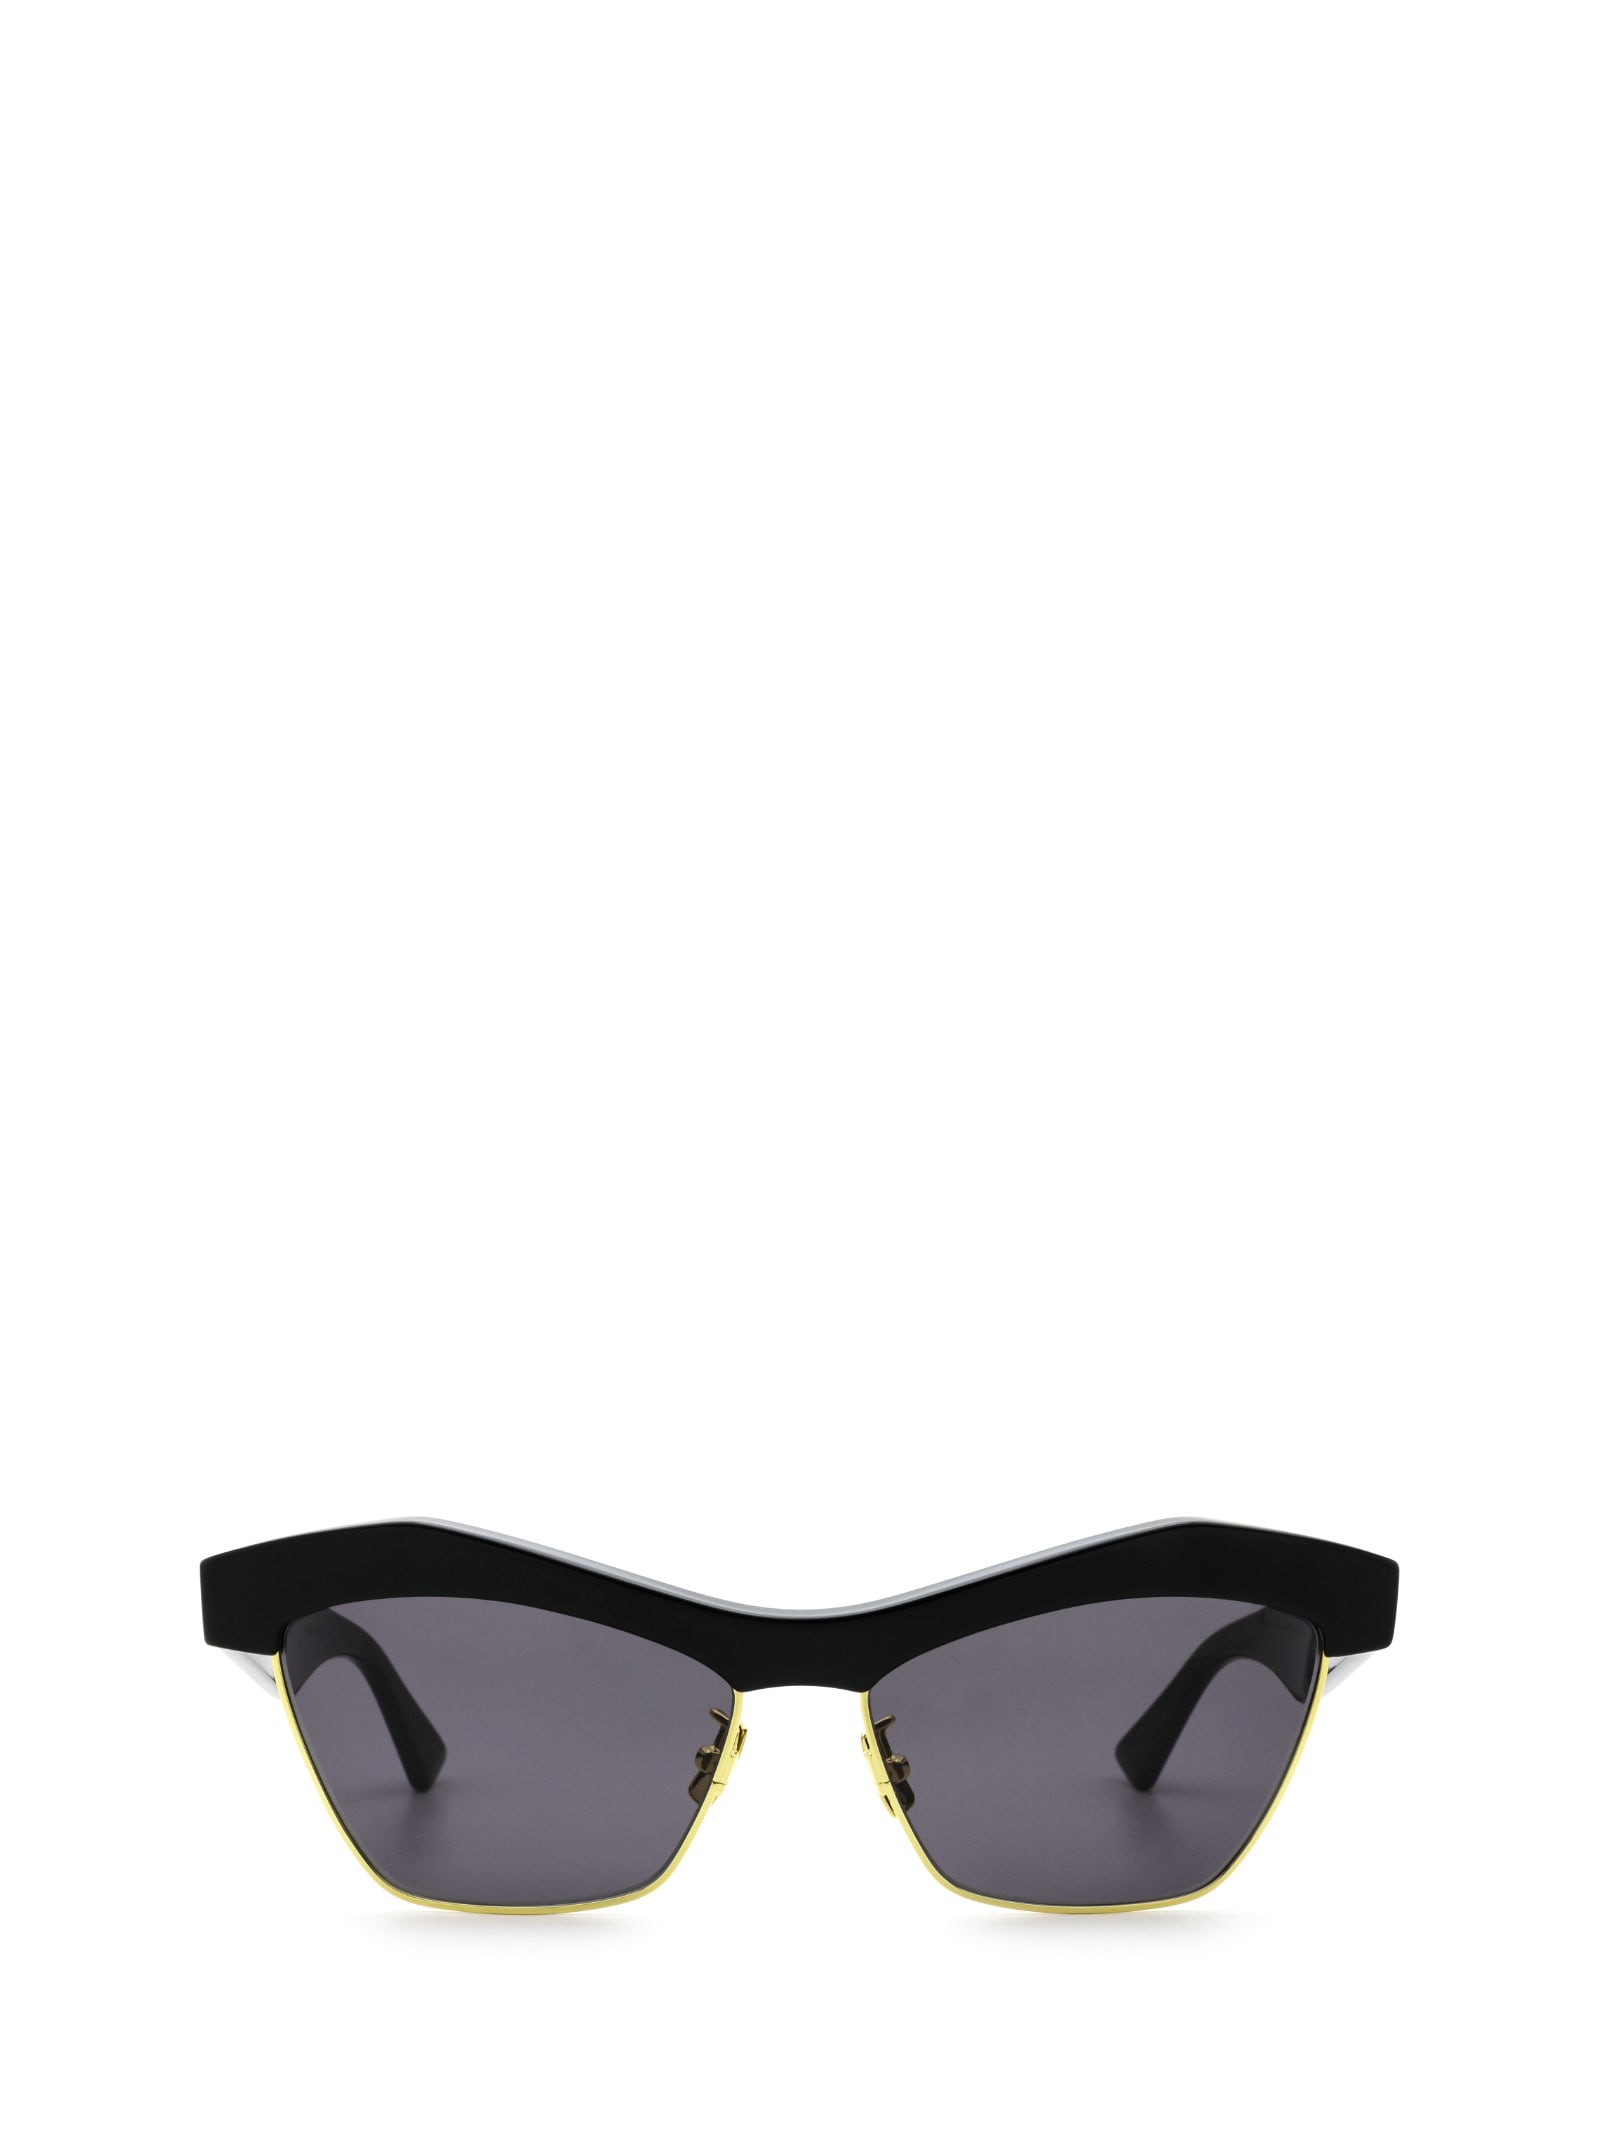 Bottega Veneta Bottega Veneta Bv1099s Black Sunglasses